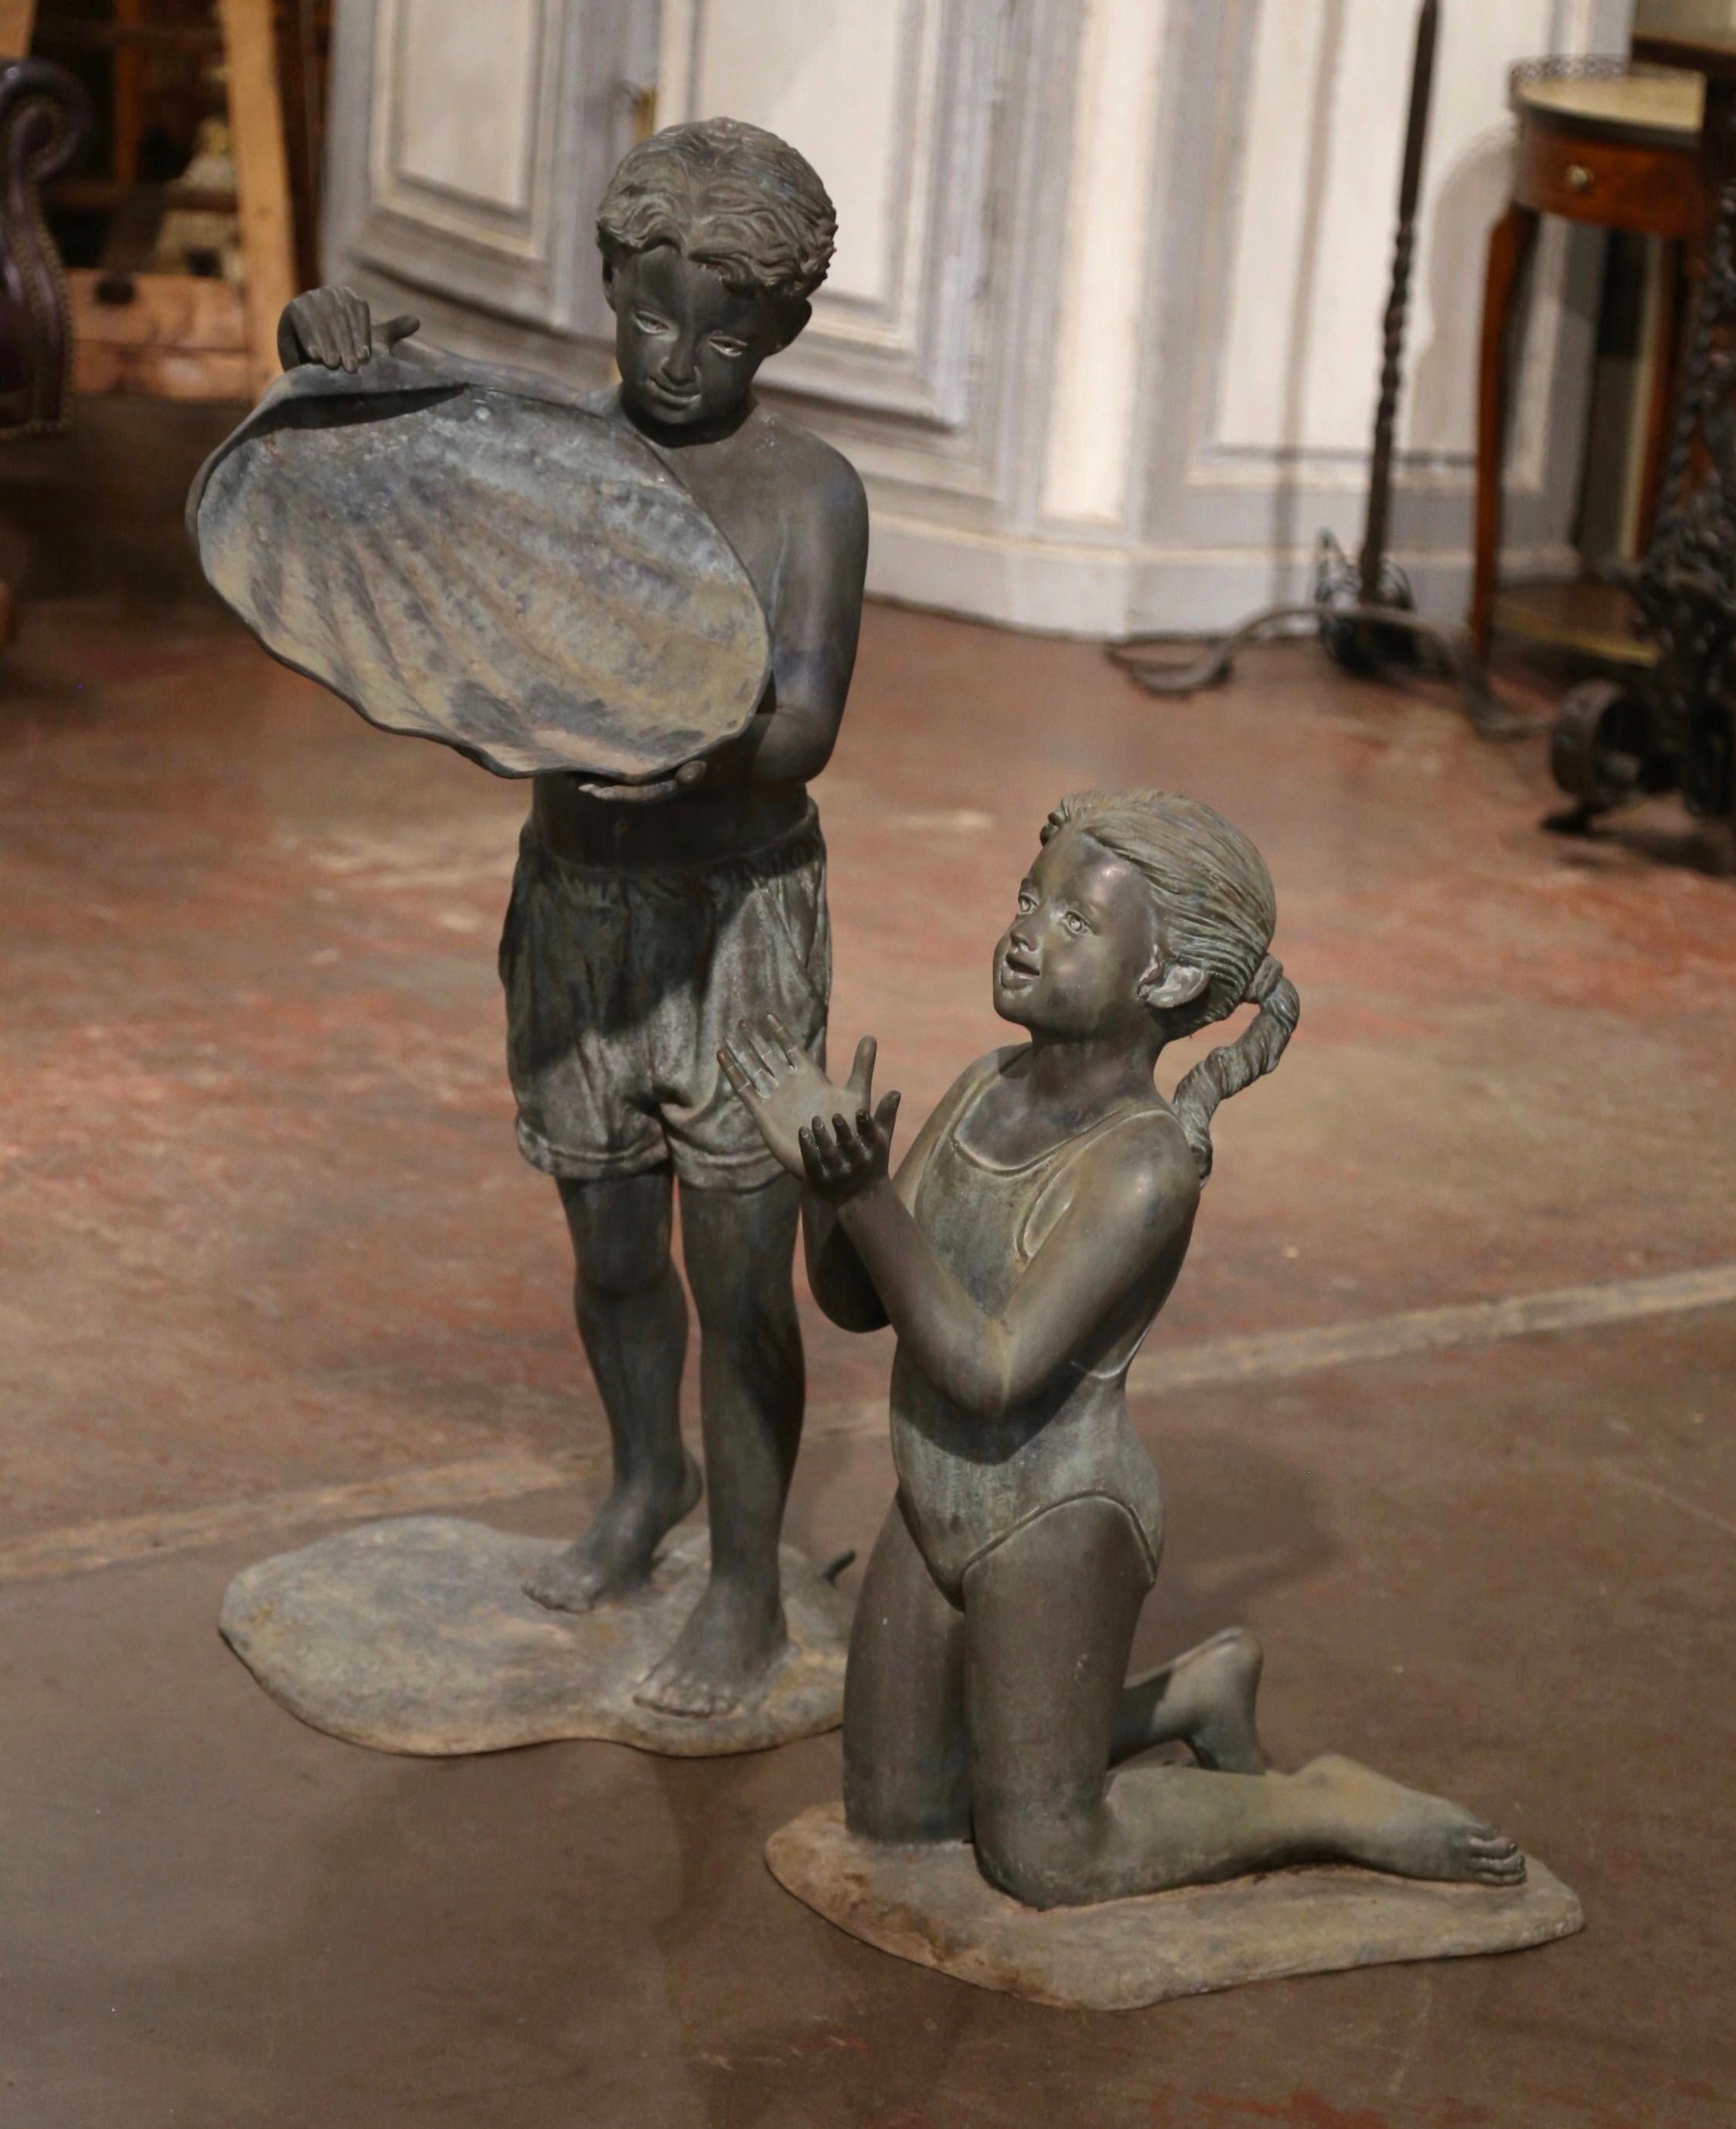 Dieser elegante Springbrunnen für den Außenbereich wurde um 1980 in Amerika hergestellt. Der aus Bronze gefertigte, zweiteilige Brunnen zeigt einen Jungen, der eine Muschel anhebt, um Wasser auf das Mädchen darunter zu gießen. Beide Figuren sind in